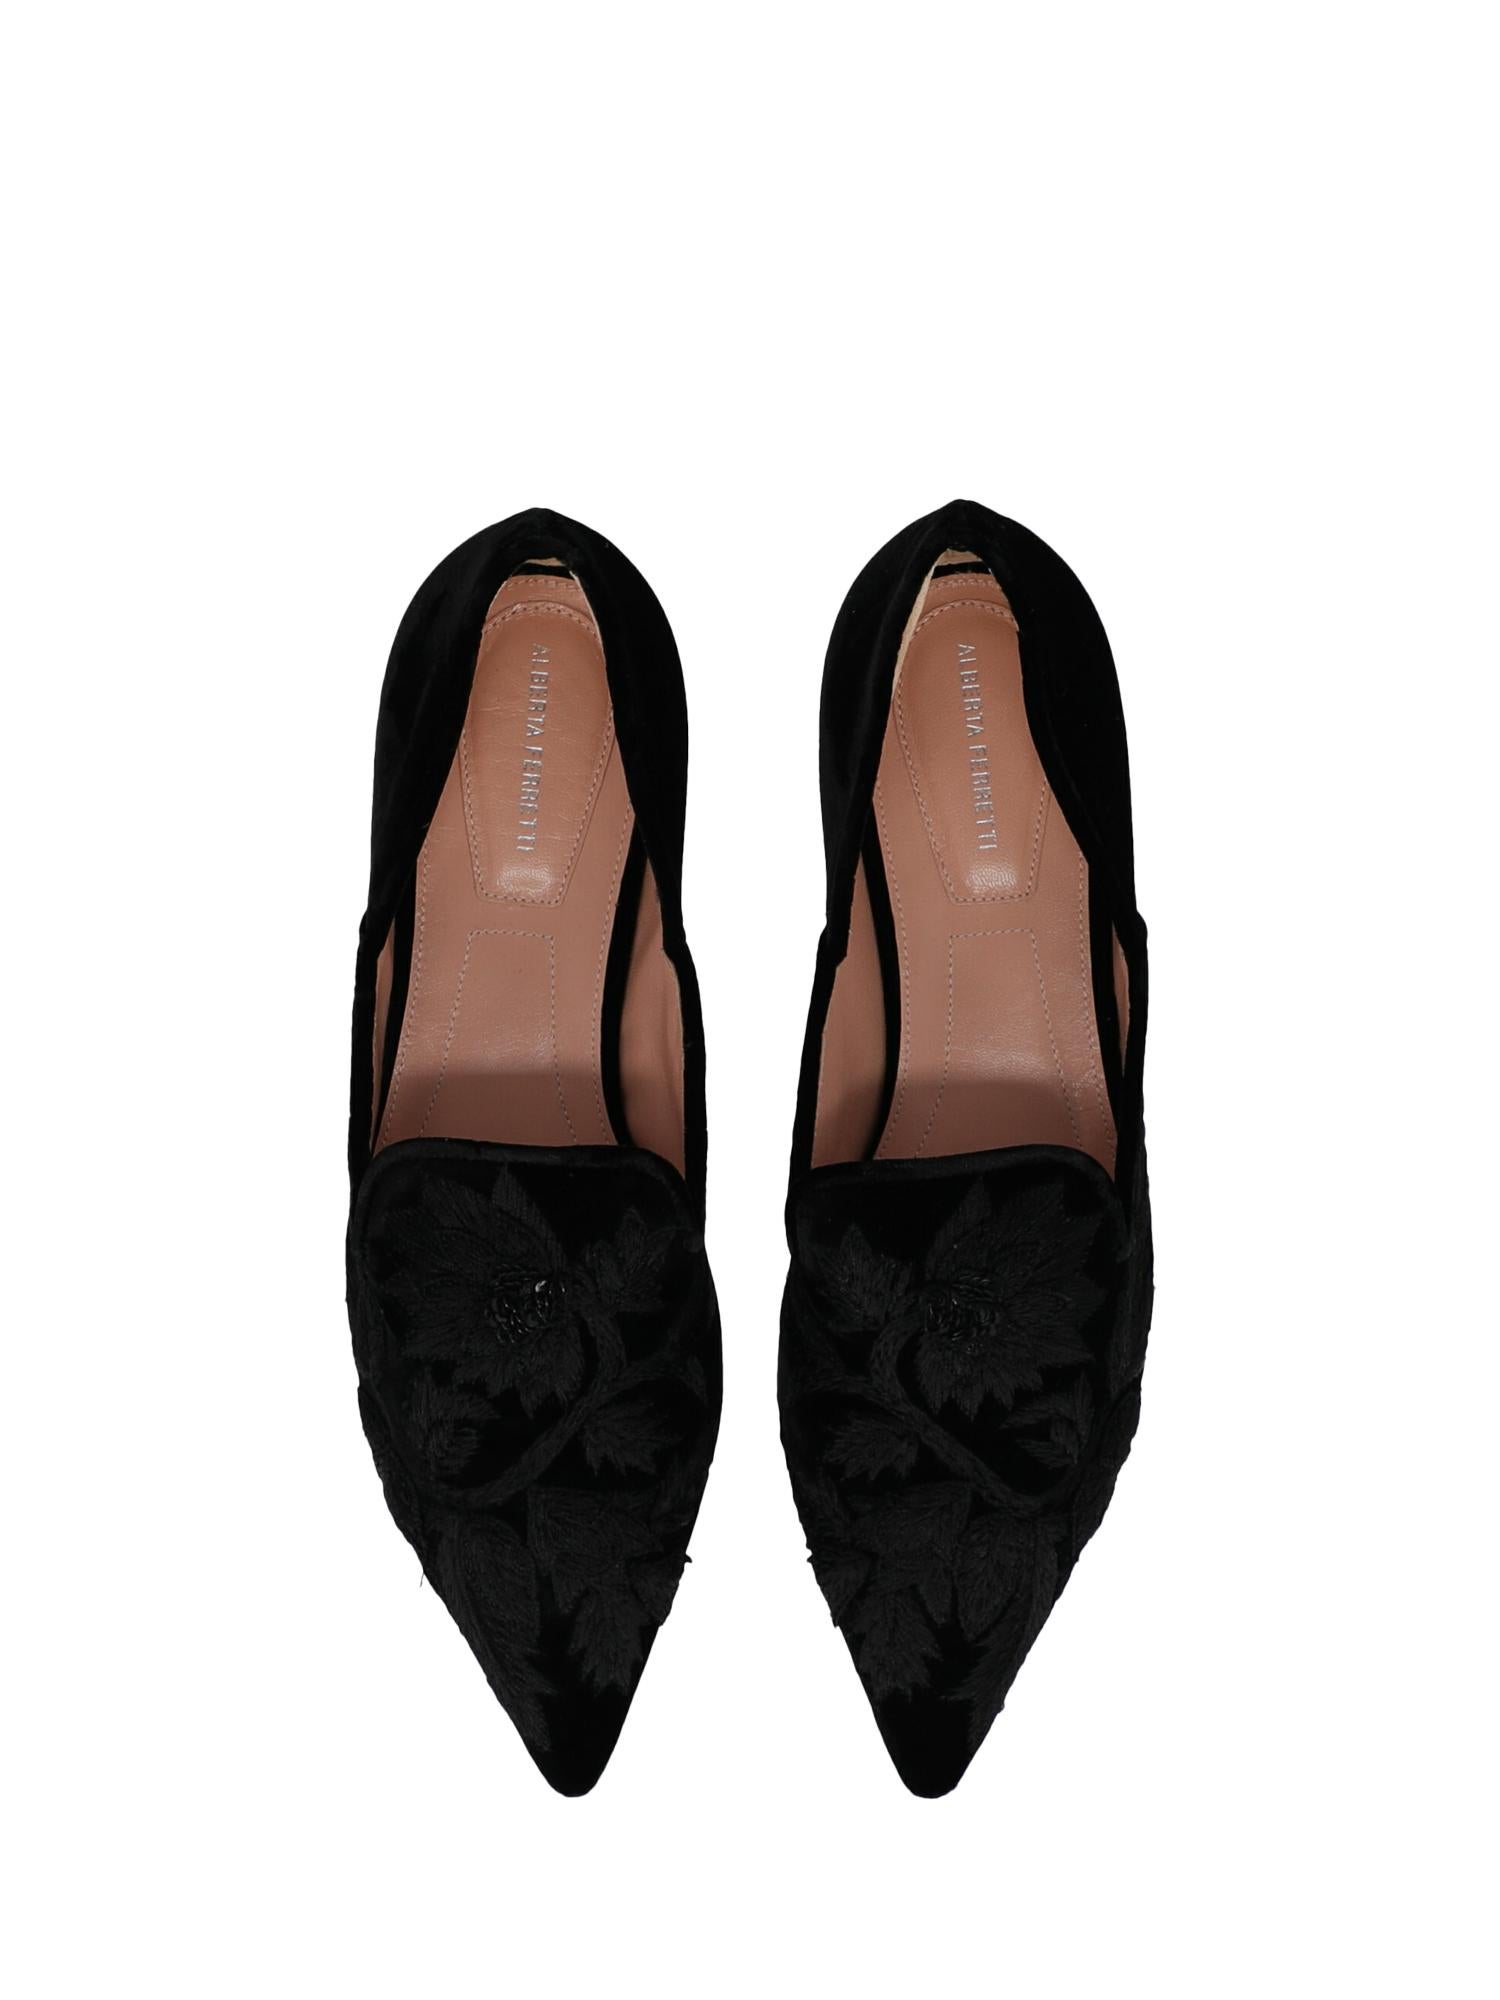 Women's Alberta Ferretti Woman Loafers Black EU 35 For Sale